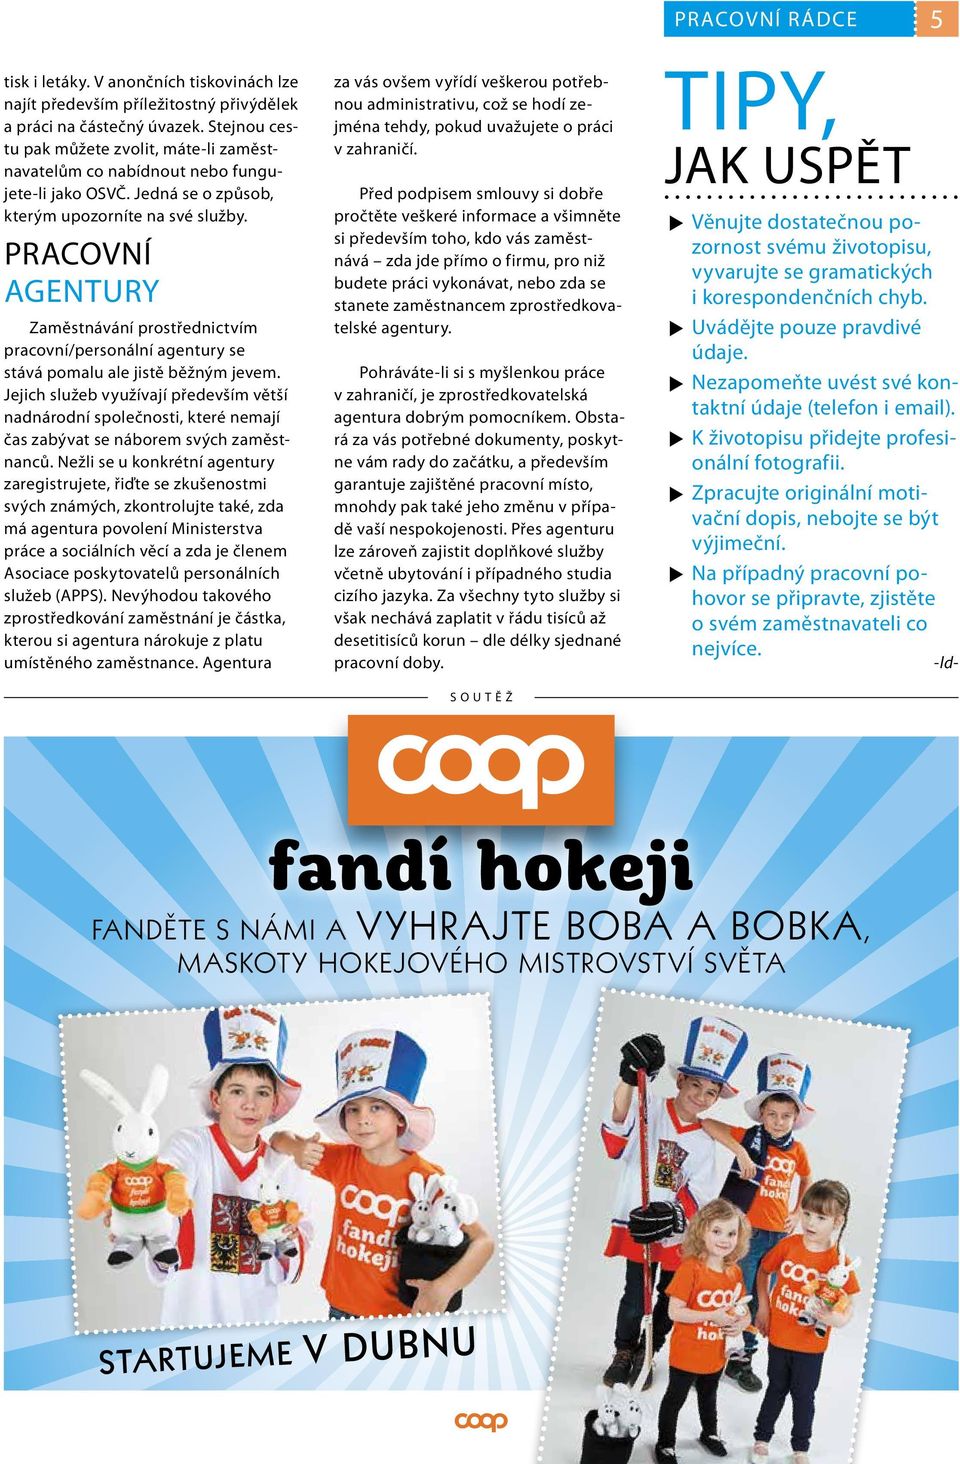 ČASOPIS ZÁKAZNÍKŮ PRODEJEN COOP 1/2015 ZDARMA RÁDCE - PDF Free Download